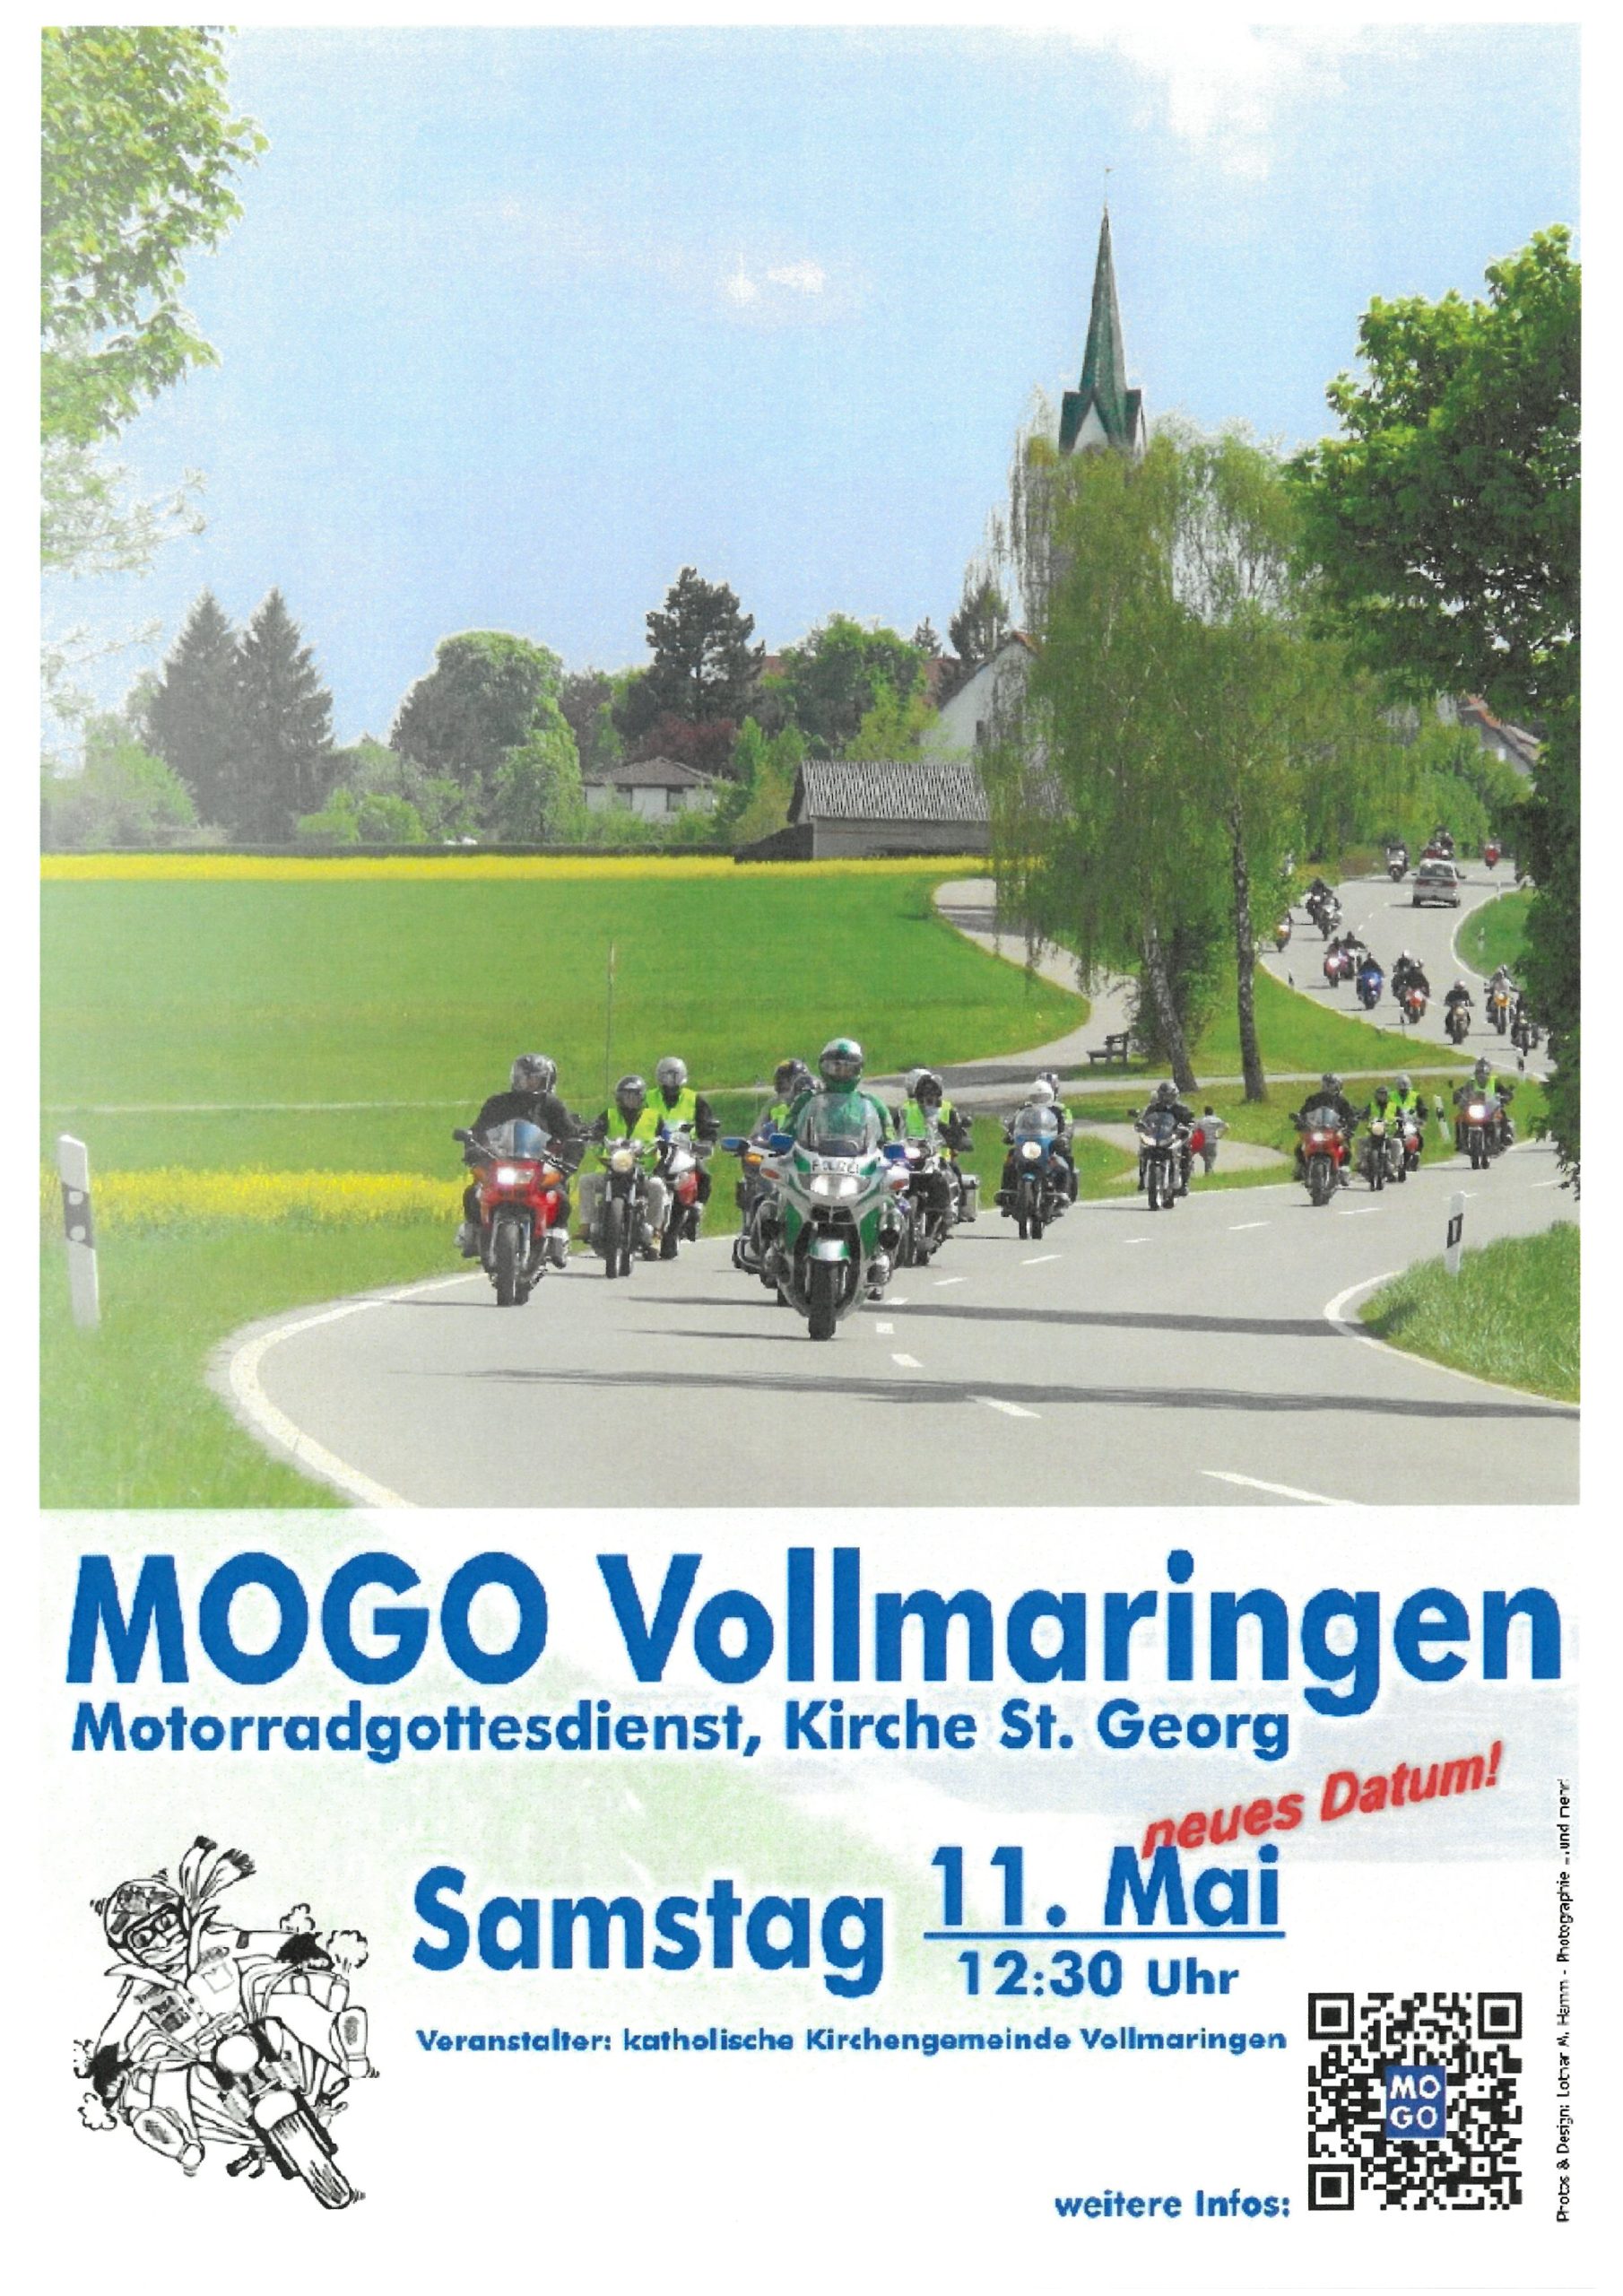 Motorradgottesdienst „MOGO“ am 11. Mai um 12:30 Uhr in Vollmaringen